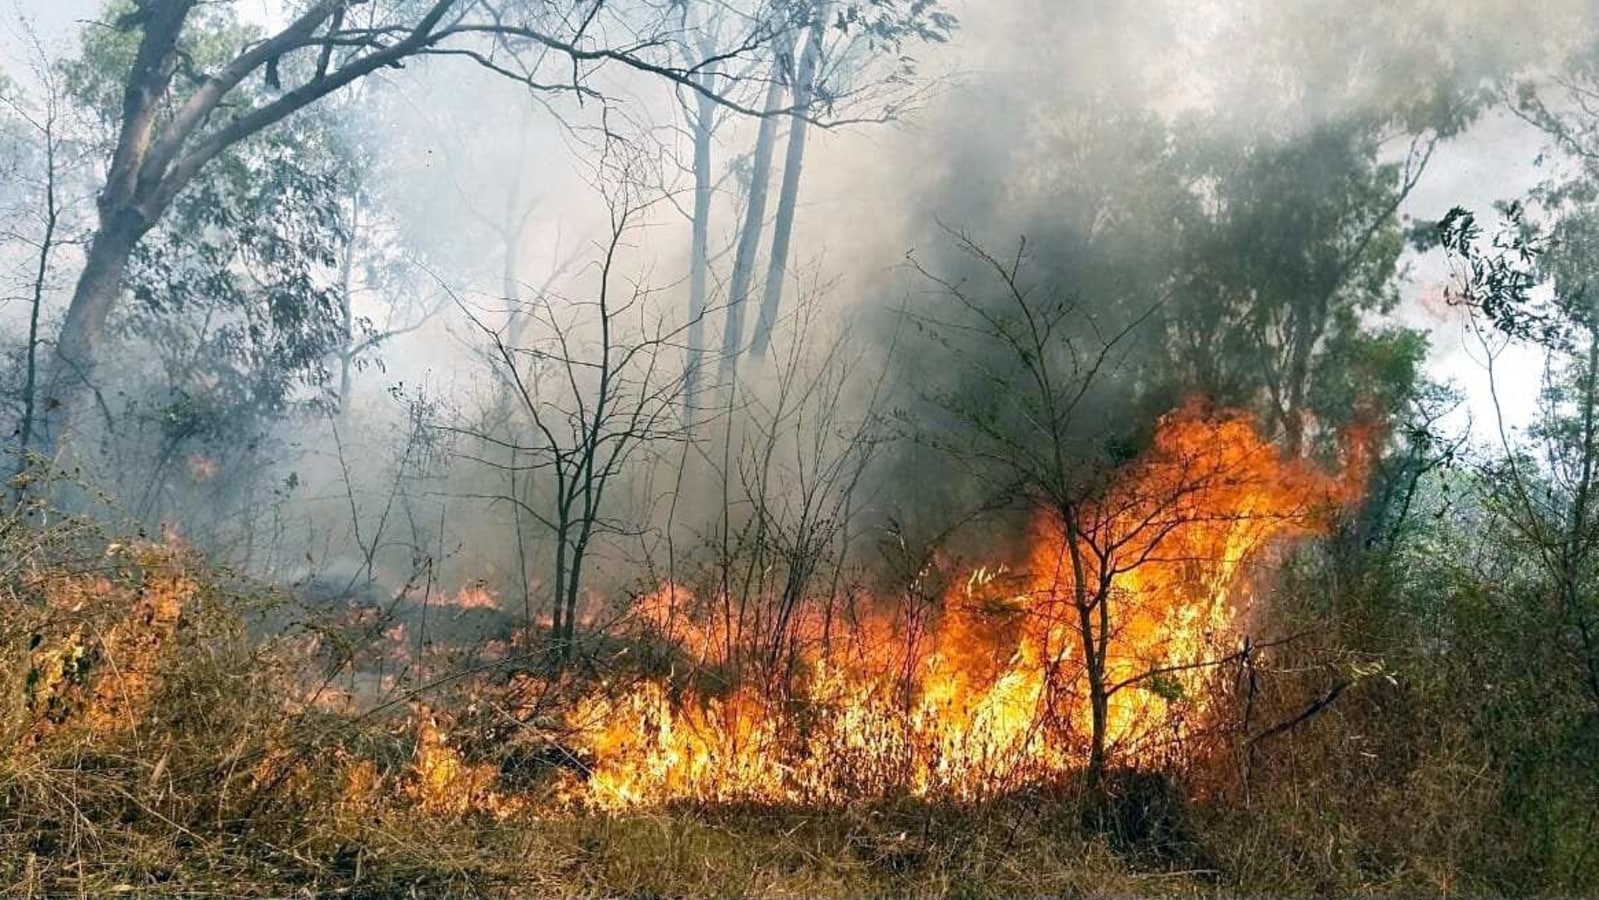 case study on forest fire in uttarakhand